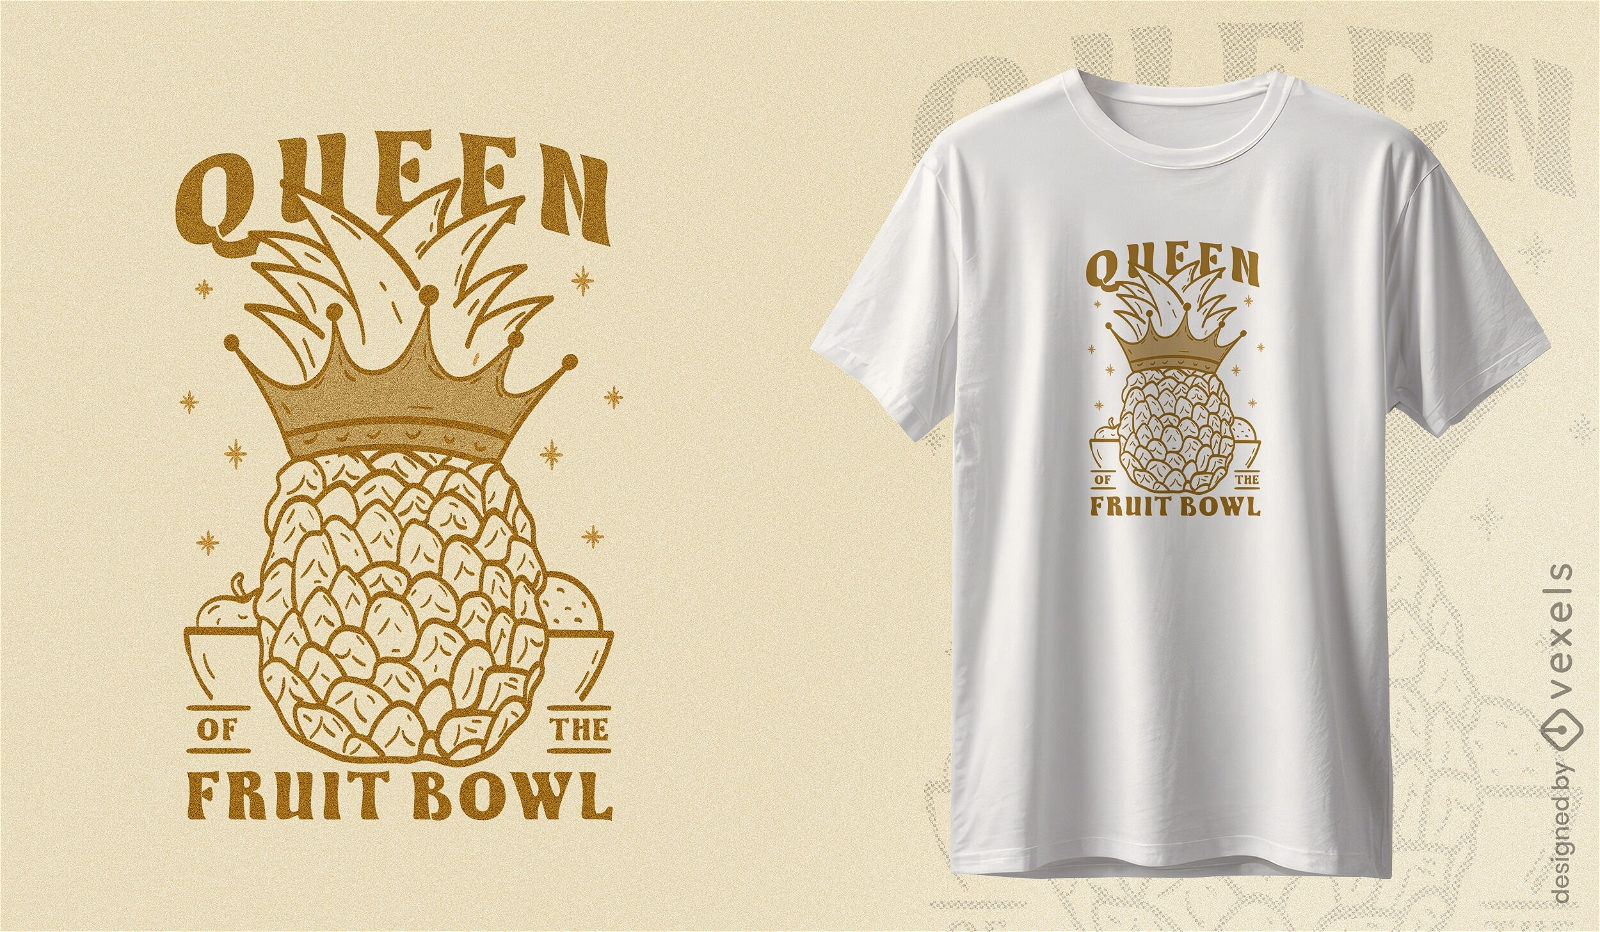 Dise?o de camiseta de la reina del frutero de la pi?a.